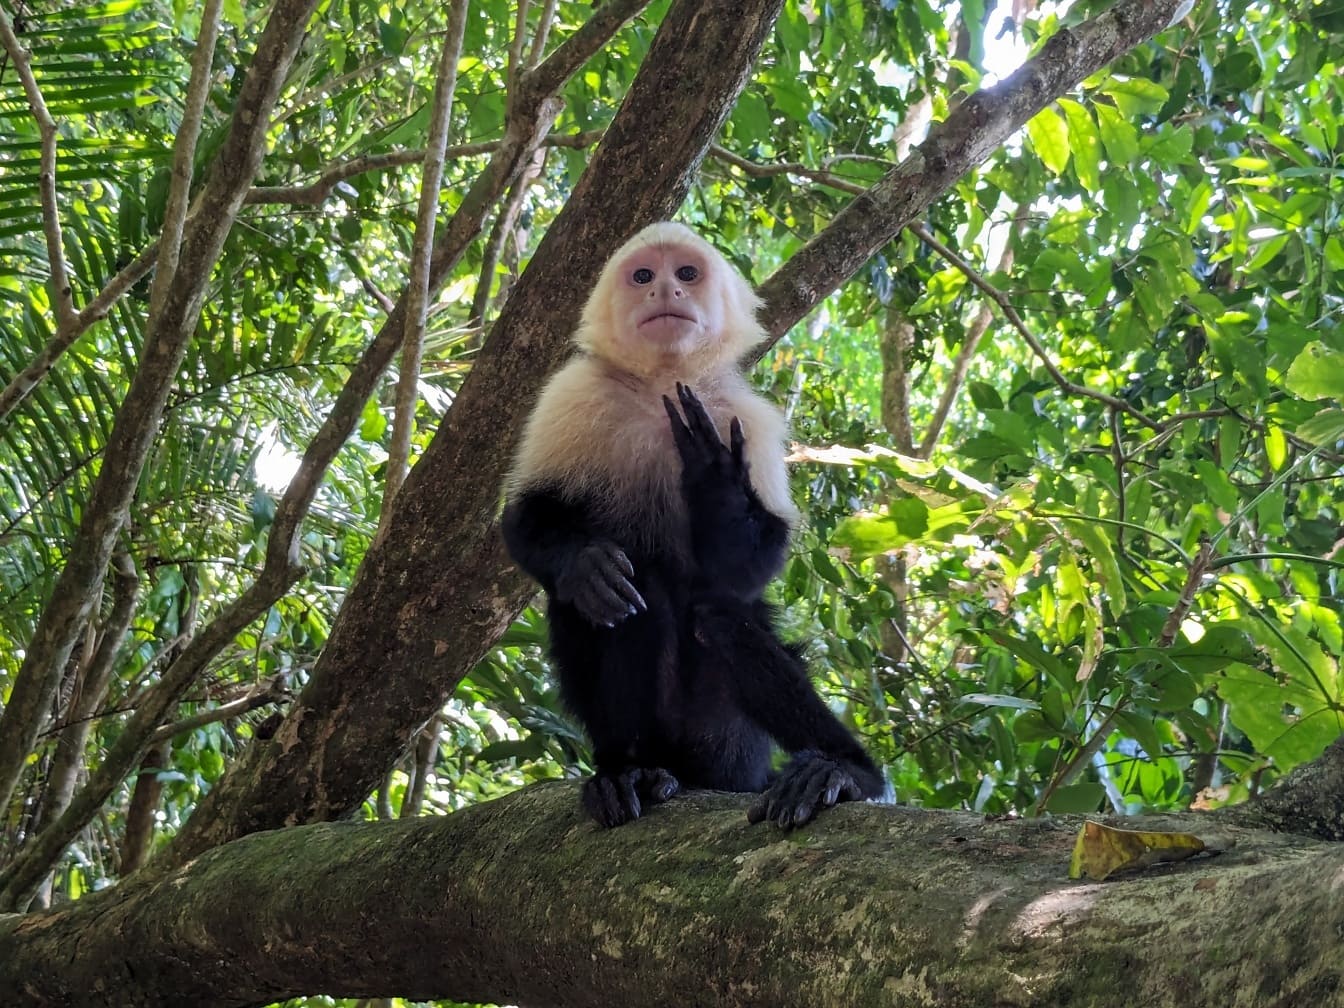 คาปูชินหน้าขาวปานามา (Cebus imitator) ลิงนั่งอยู่บนกิ่งไม้